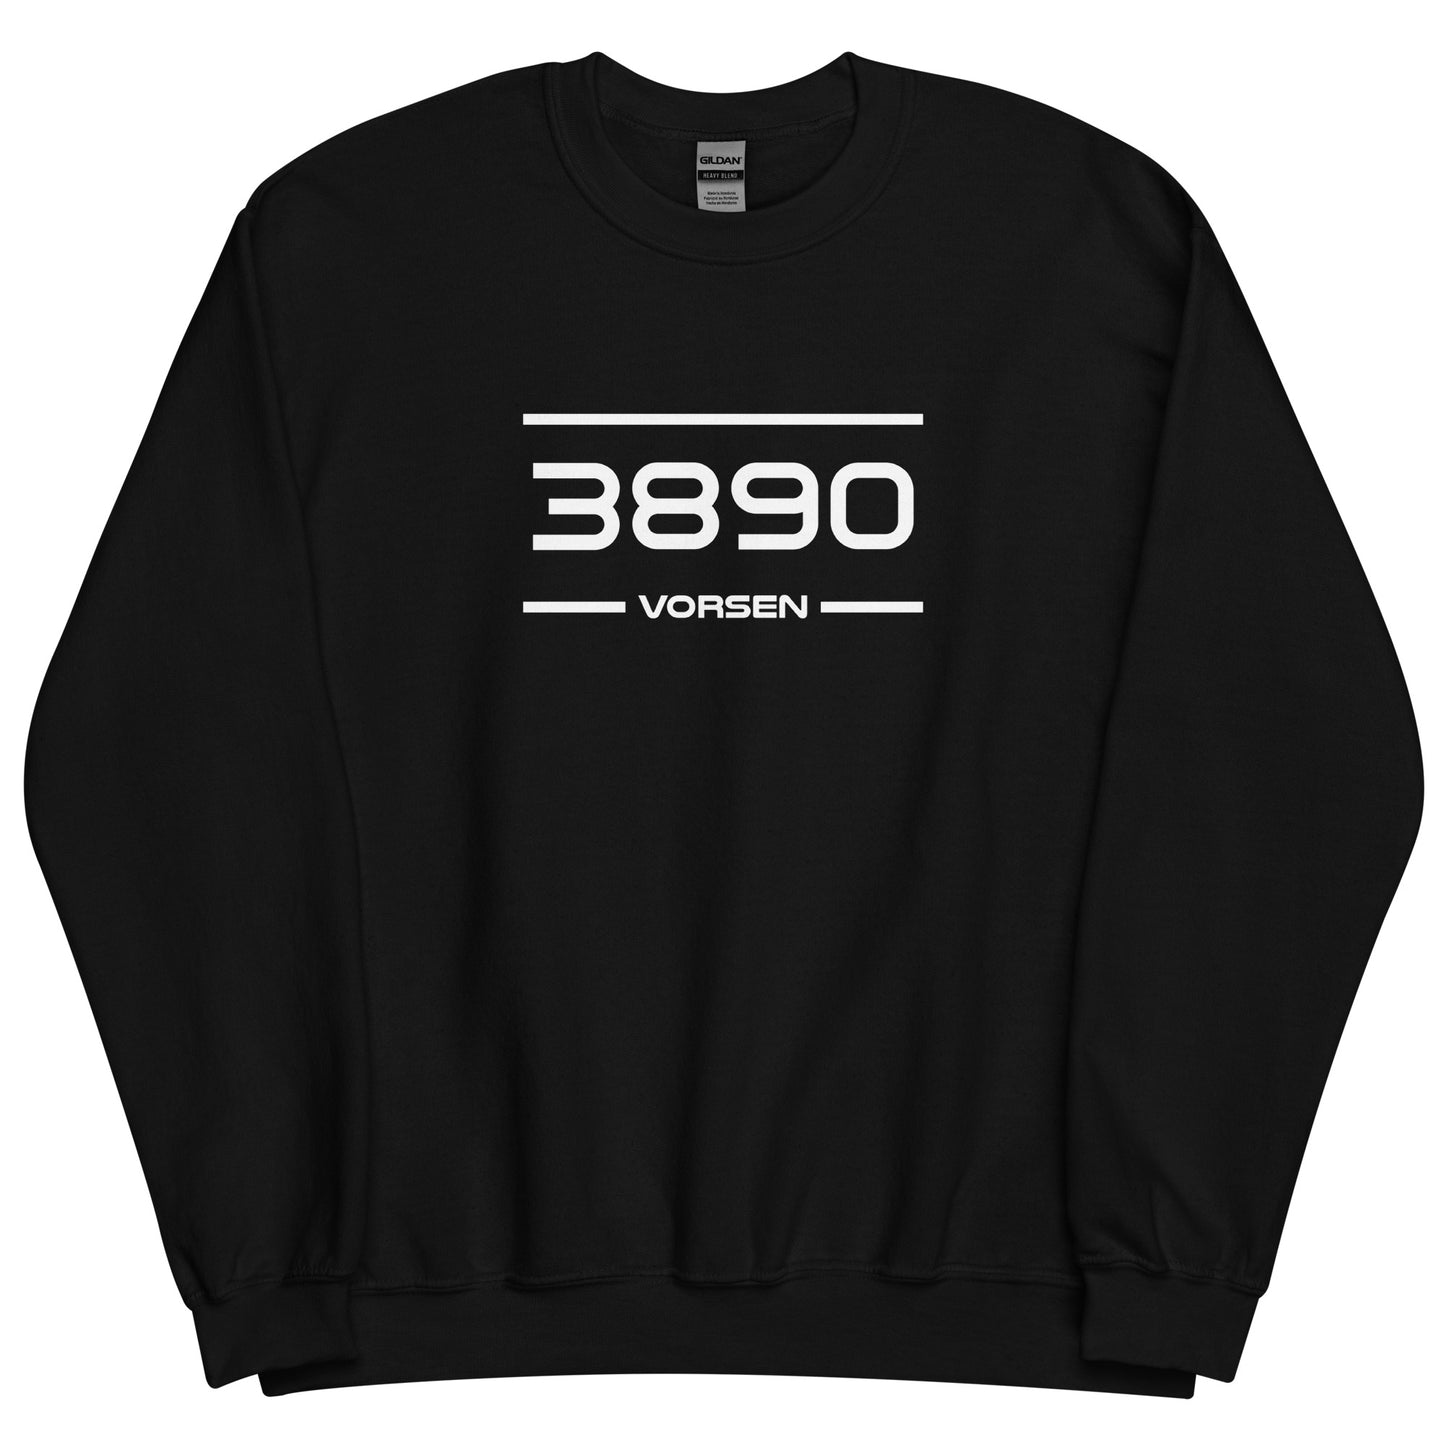 Sweater - 3890 - Vorsen (M/V)